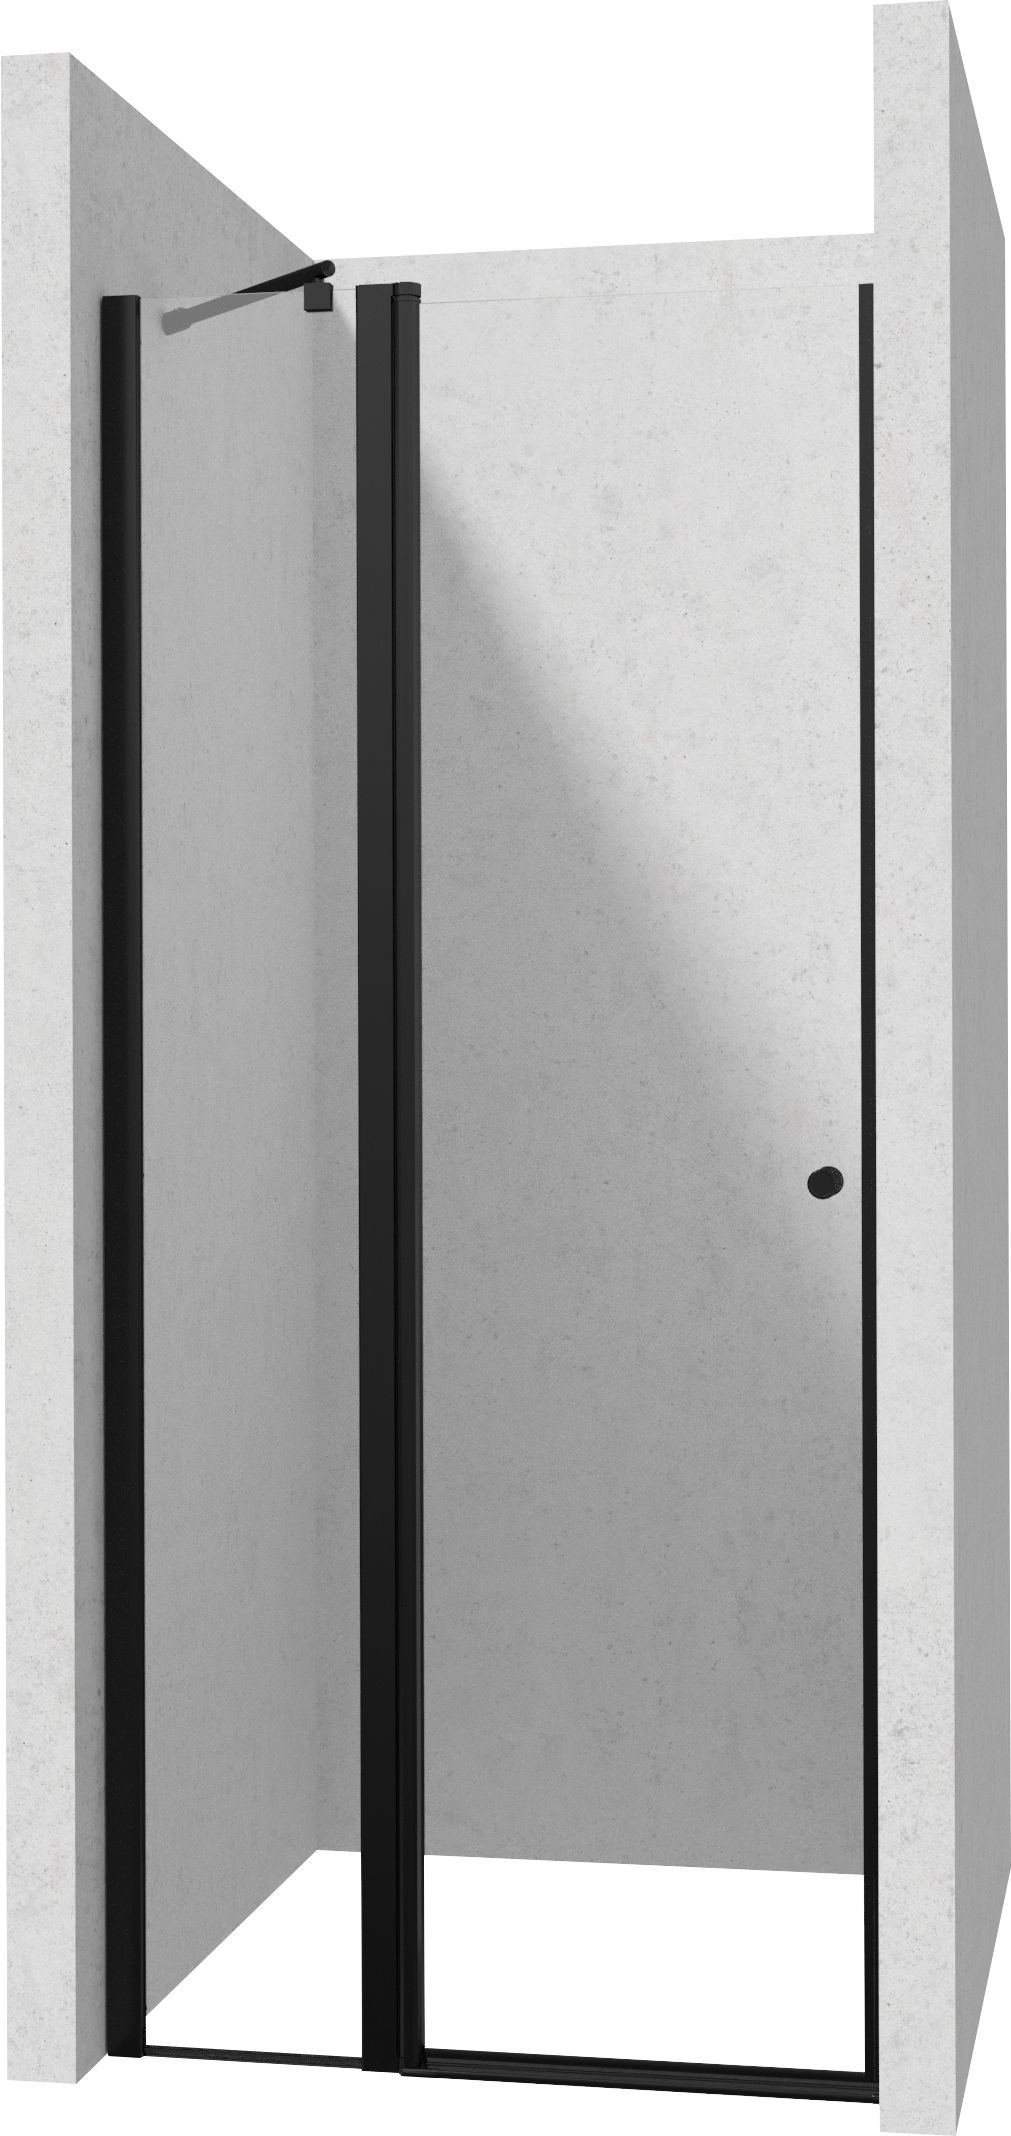 Drzwi prysznicowe 90 cm - uchylne - KTSUN41P - Główne zdjęcie produktowe